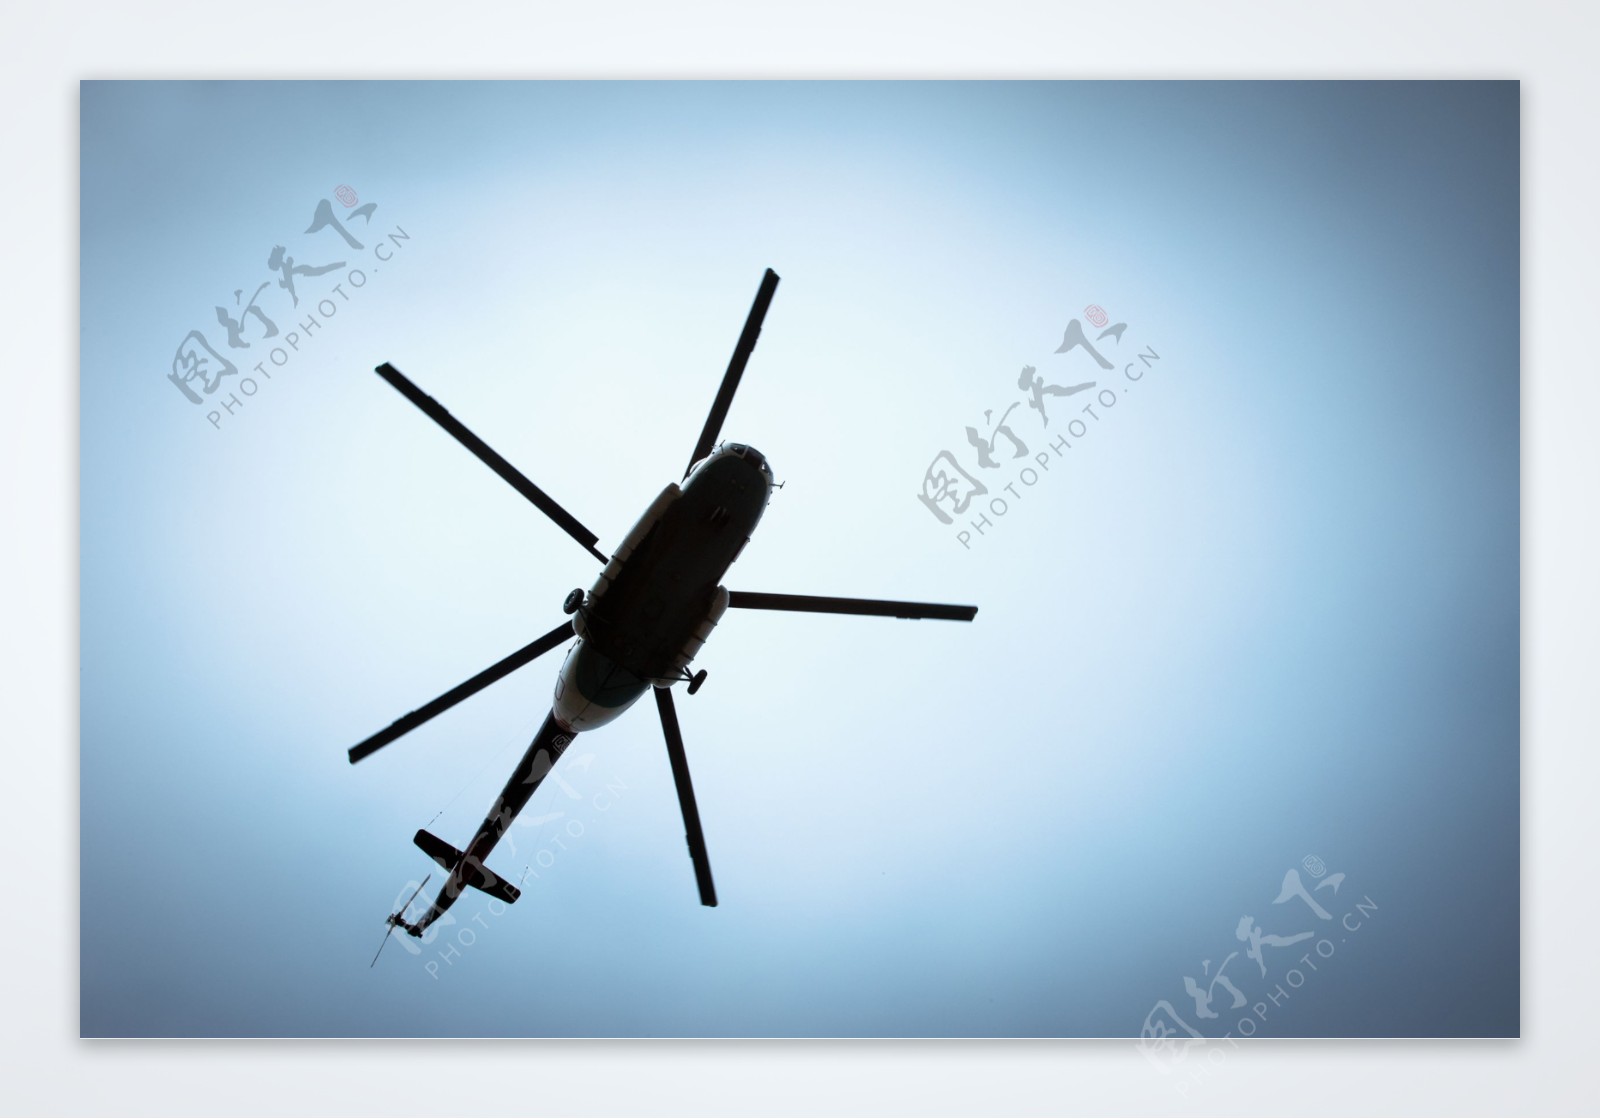 蓝天下的直升机图片